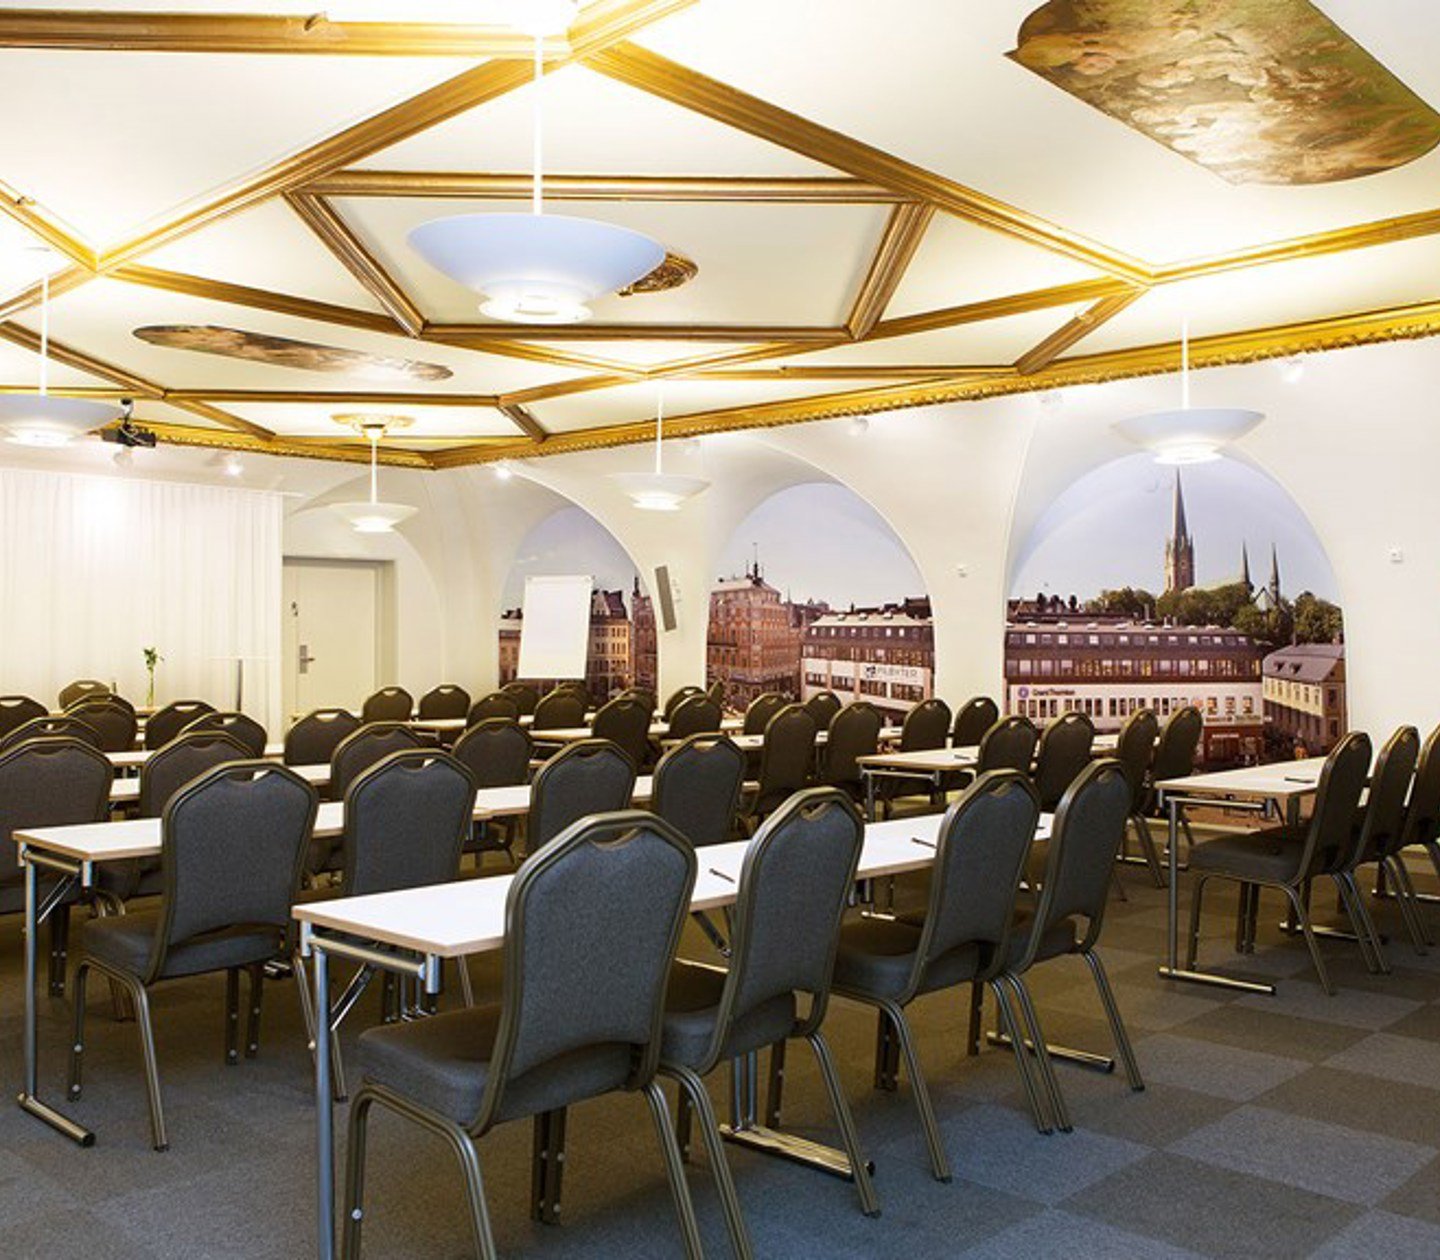 Stort konferensrum med skolsittning, upplyst tak med gulddetaljer och mörkt golv